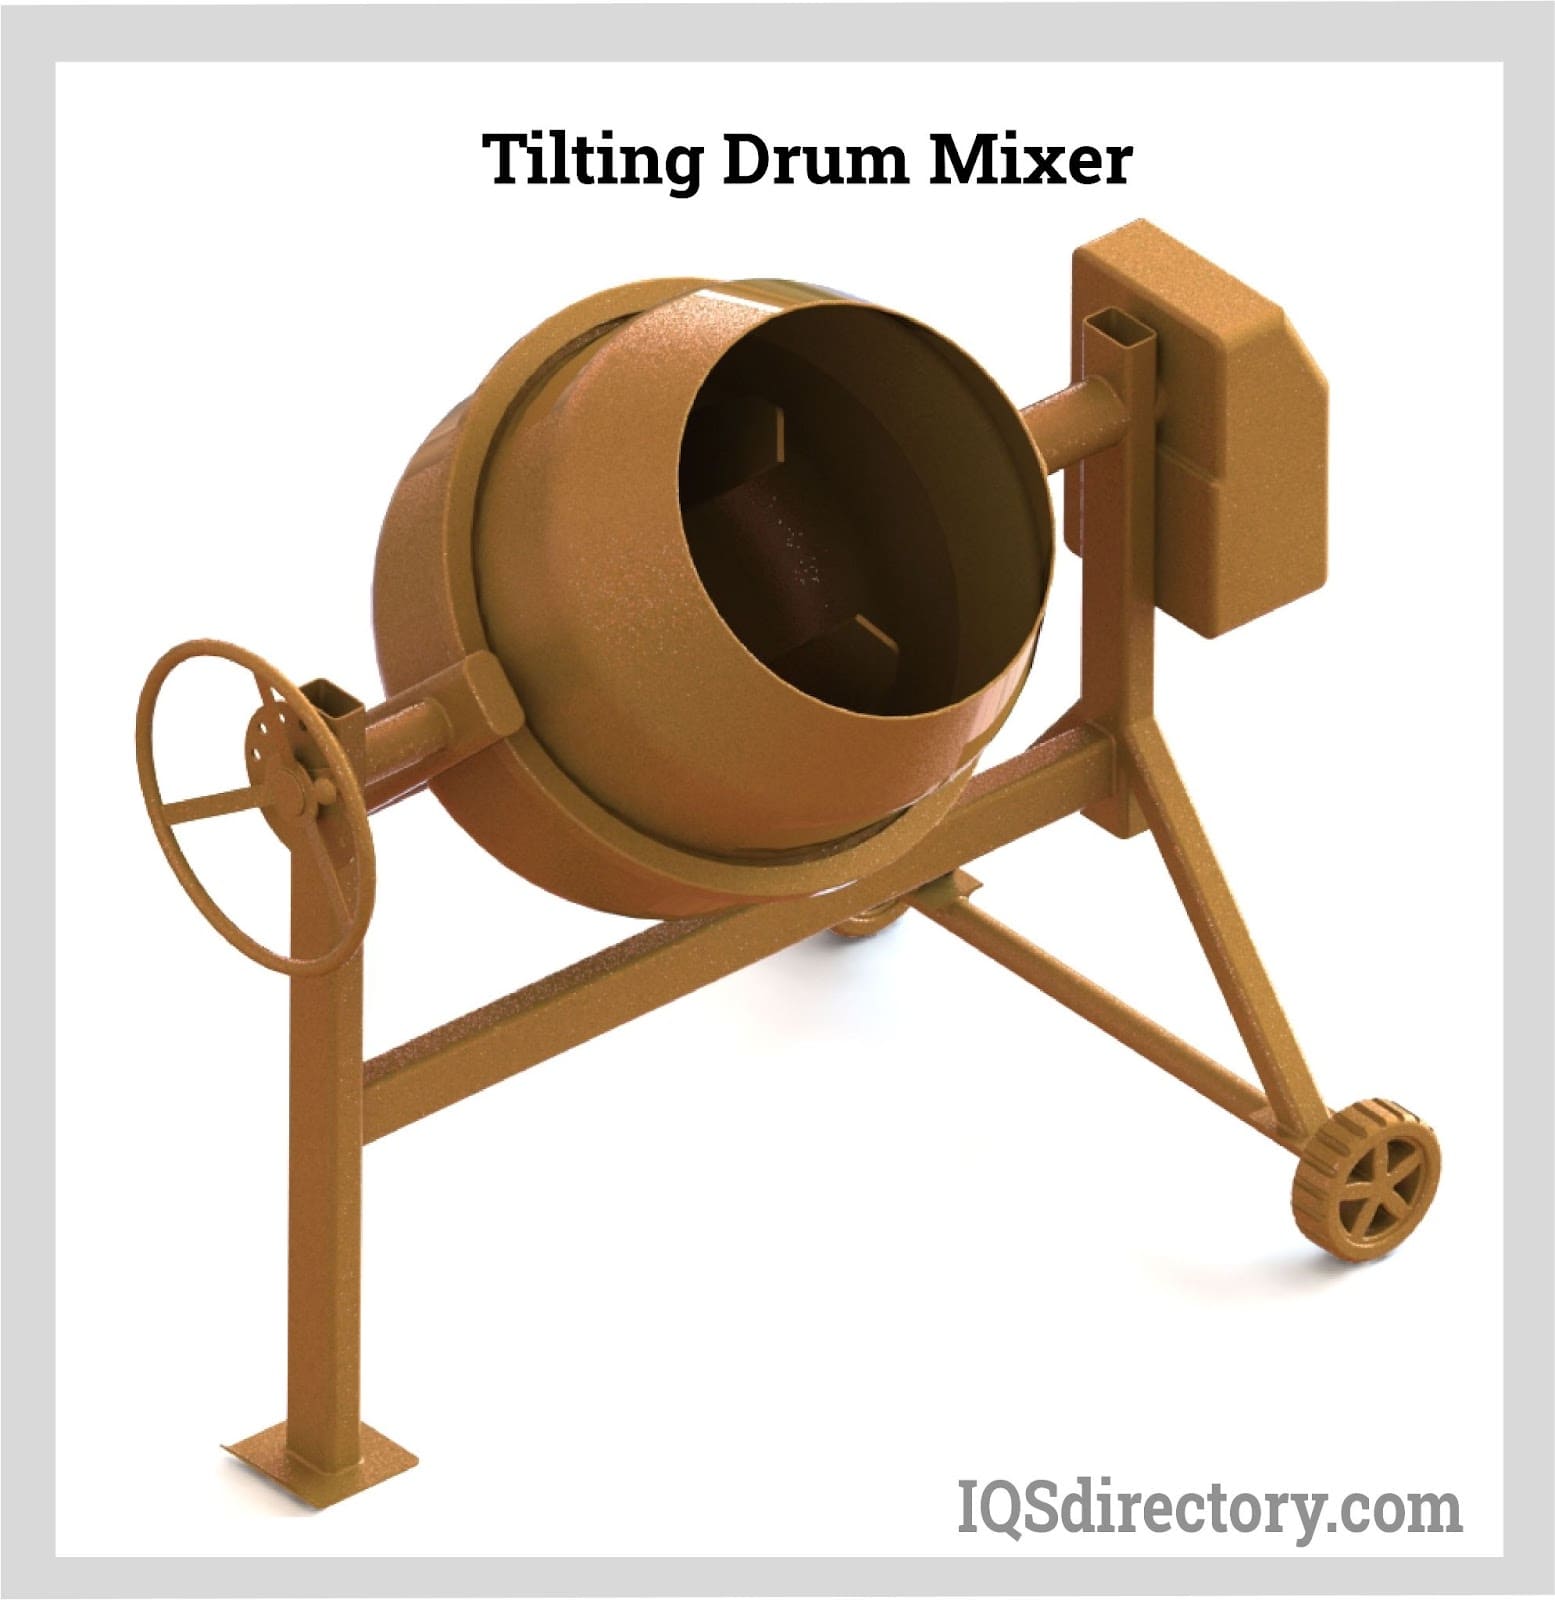 Tilting Drum Mixer